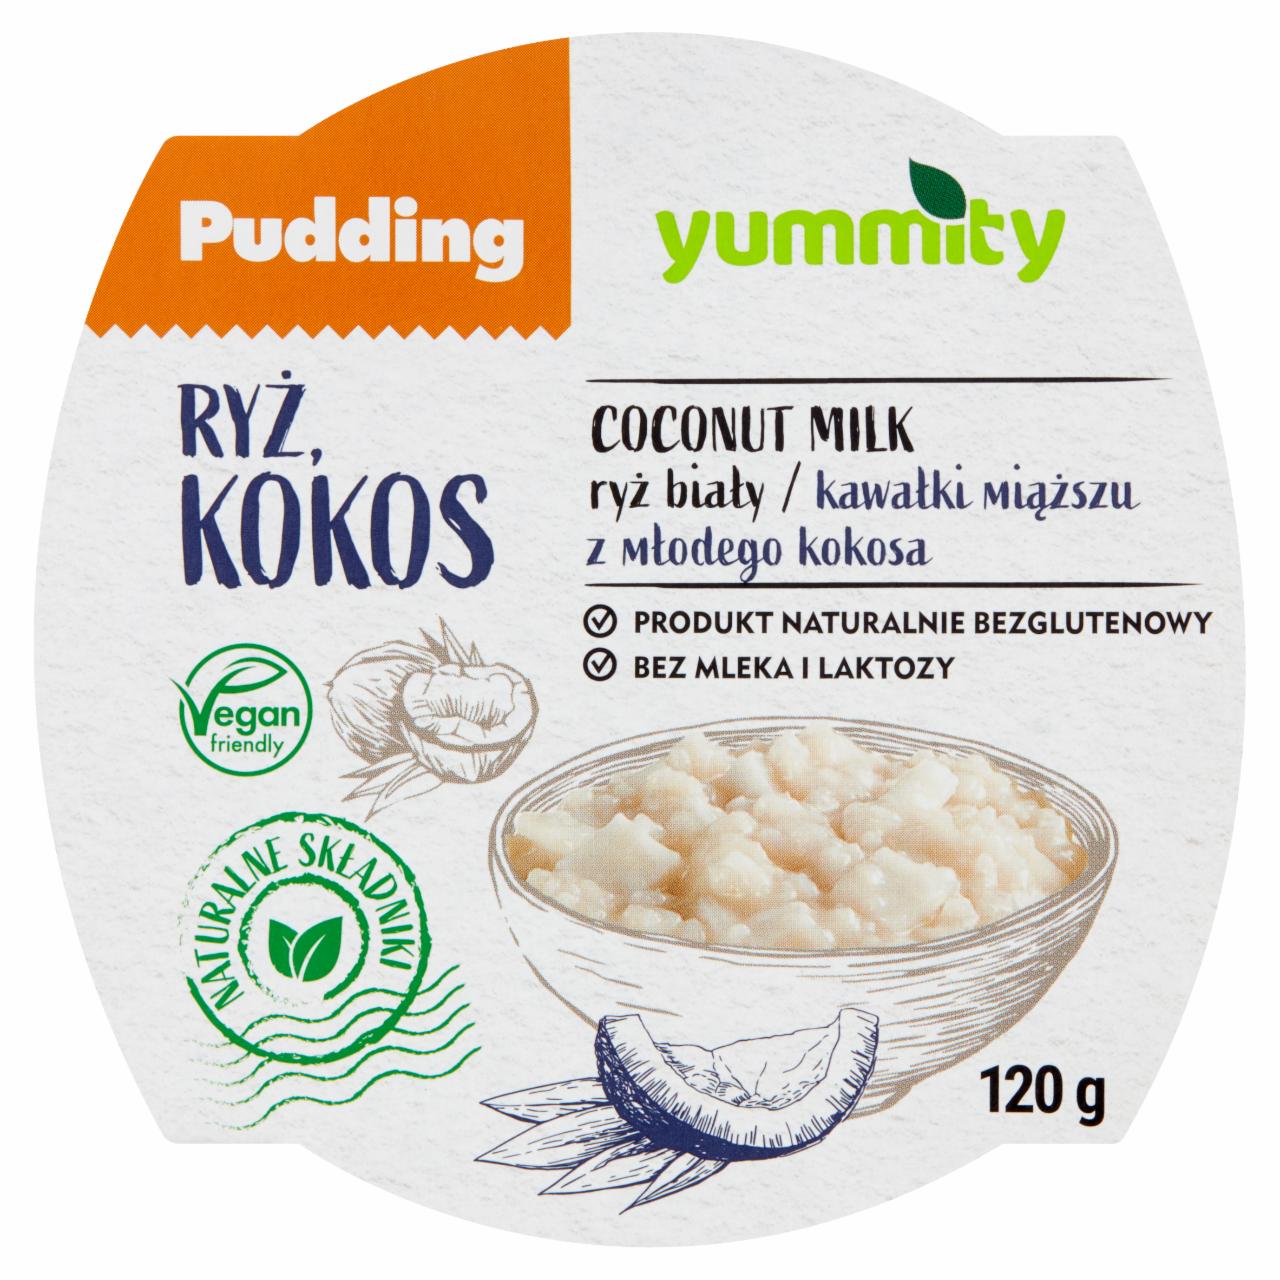 Zdjęcia - Yummity Bezglutenowy pudding ryżowy z kokosem 120 g